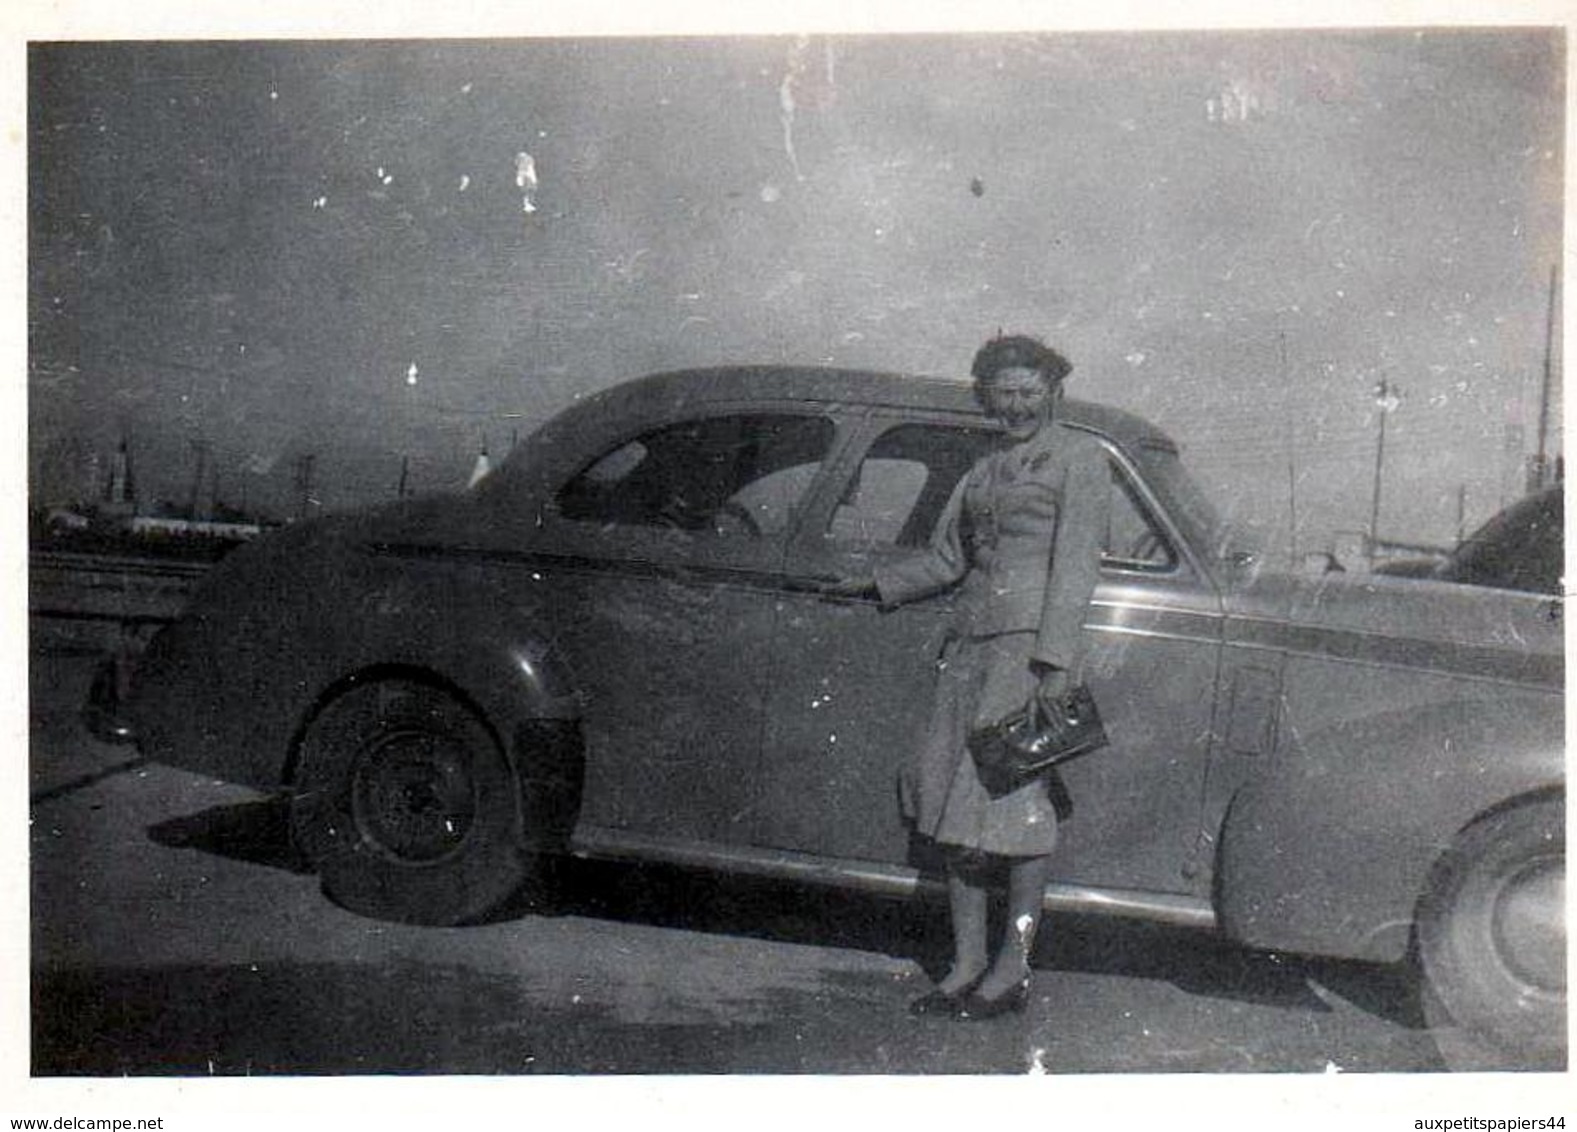 2 Photos Originales Aux États-Unis Voitures & Passagers à Identifier Vers 1920 Et 1940 - Automobiles